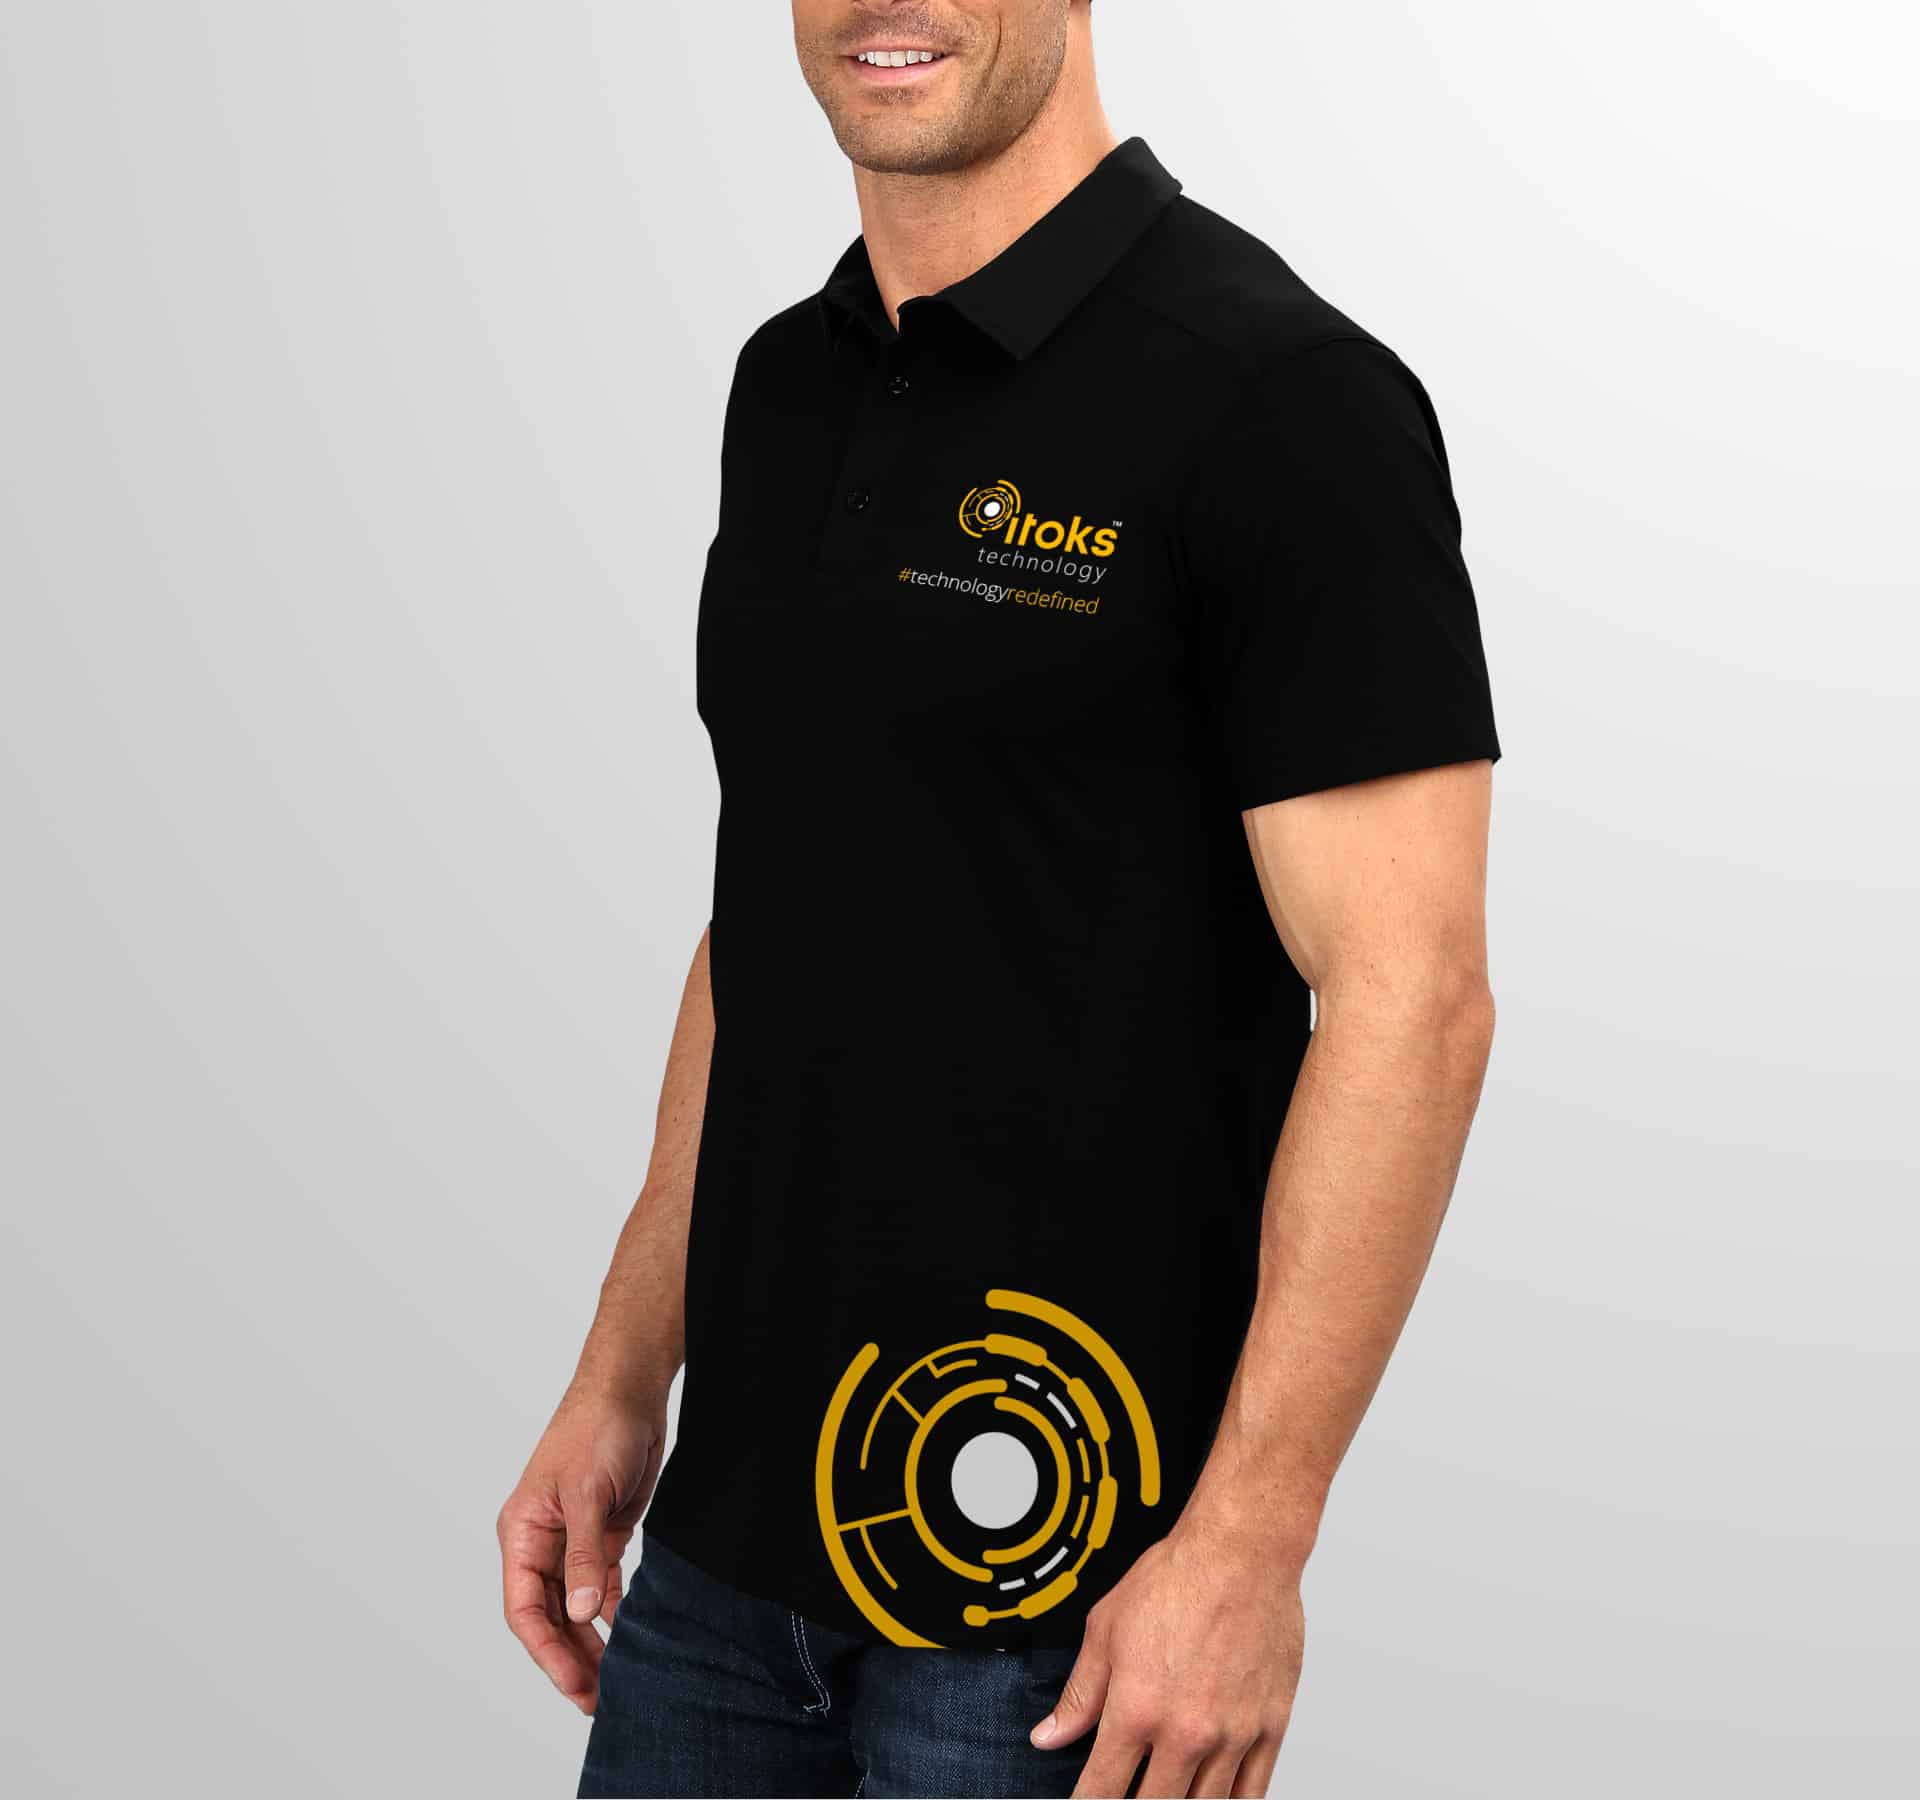 T-Shirt Design for iToks Technology